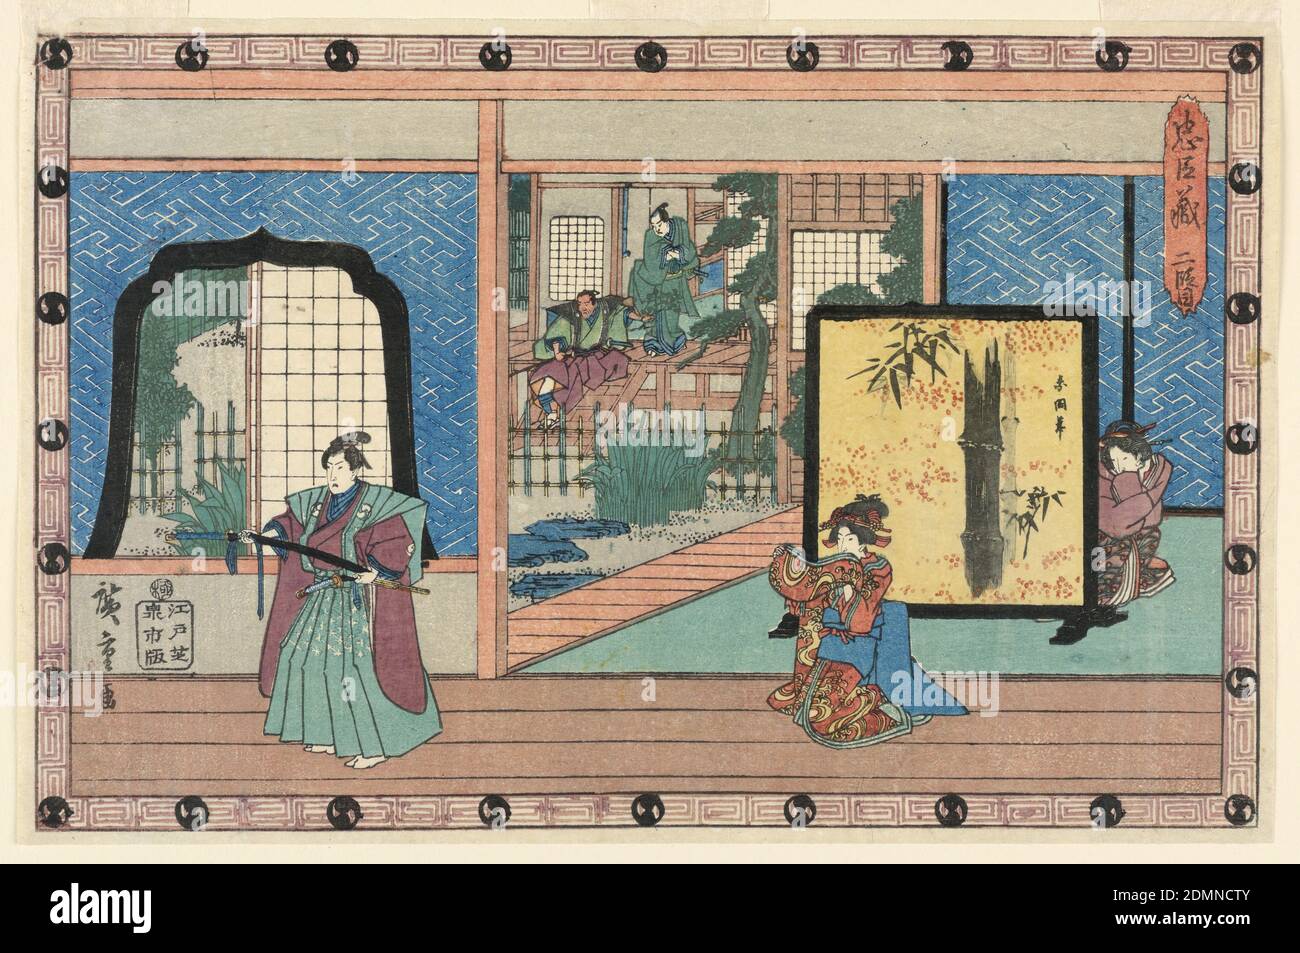 Conception de la scène : Act II, pour la Chushingura, Ando Hiroshige, japonais, 1797–1858, Senichi, impression en bloc de bois (ukiyo-e) sur papier mûrier (washi), encre couleur, format horizontal. Une scène montre l'intérieur d'une maison, avec la figure d'une samouraï et une femme à genoux. À droite au milieu, une femme s'agenouille derrière un écran peint. Jardin avec deux figures sur un porche, arrière-plan gauche. Titre, en haut à droite. Bordure composée de motifs de sceaux d'acteurs (tomo-e crêtes)., Japon, 1836, théâtre, Imprimer Banque D'Images